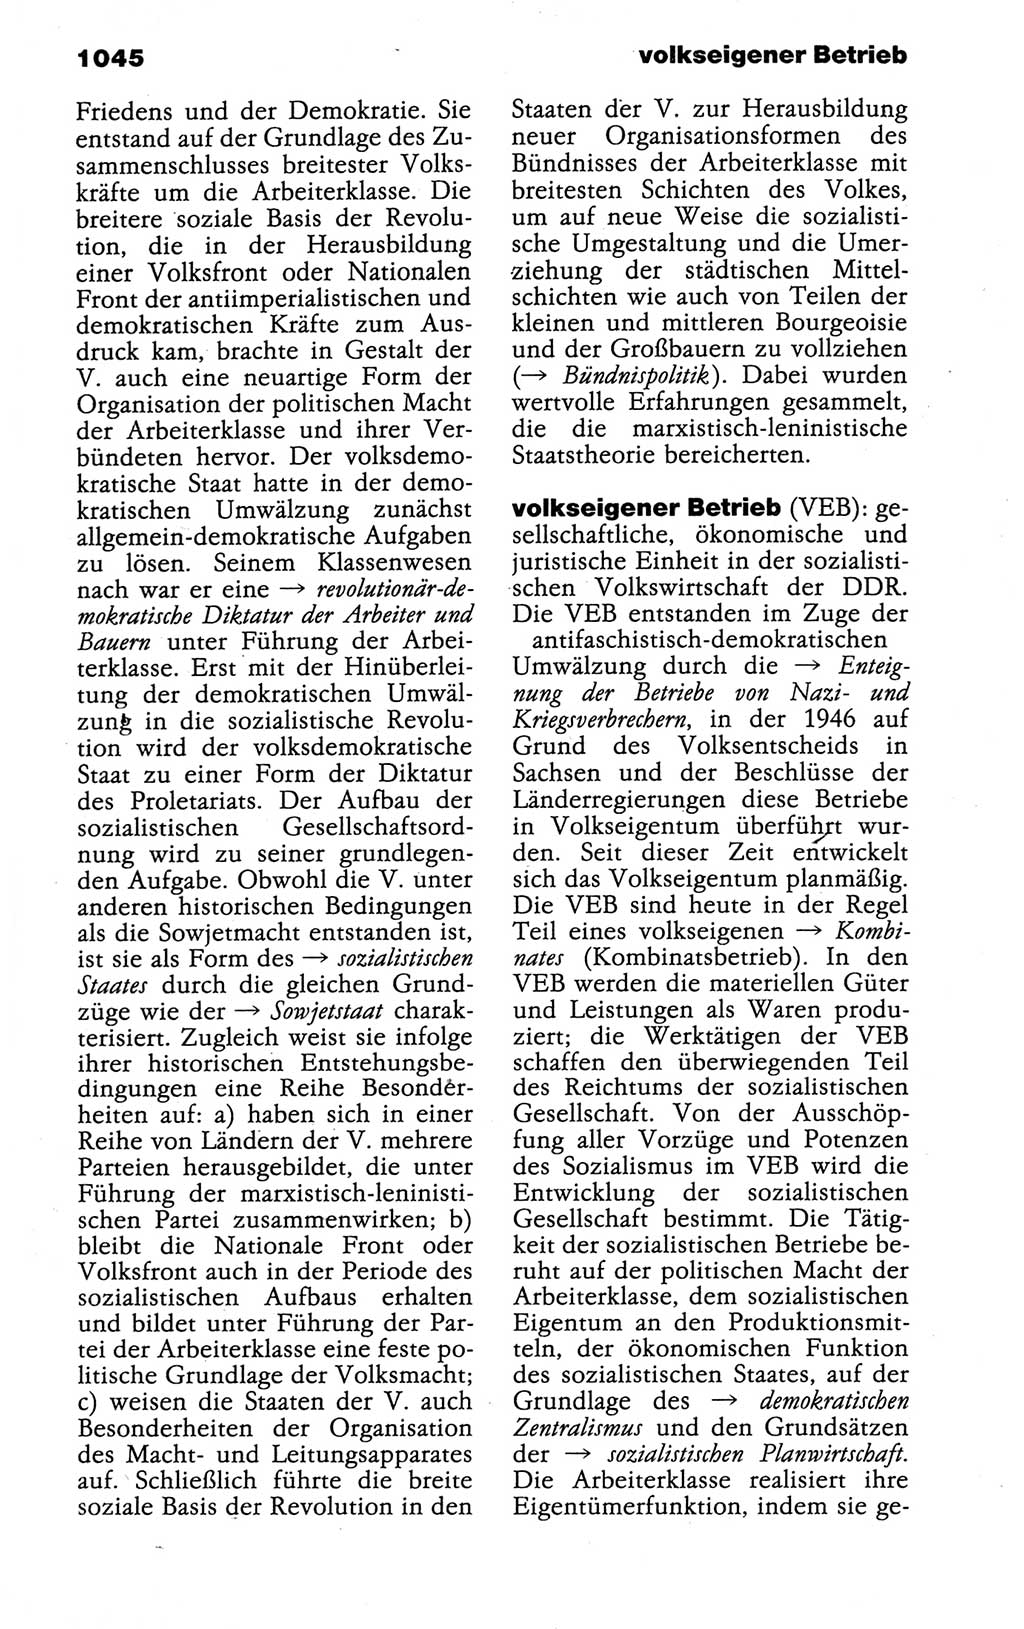 Kleines politisches Wörterbuch [Deutsche Demokratische Republik (DDR)] 1988, Seite 1045 (Kl. pol. Wb. DDR 1988, S. 1045)